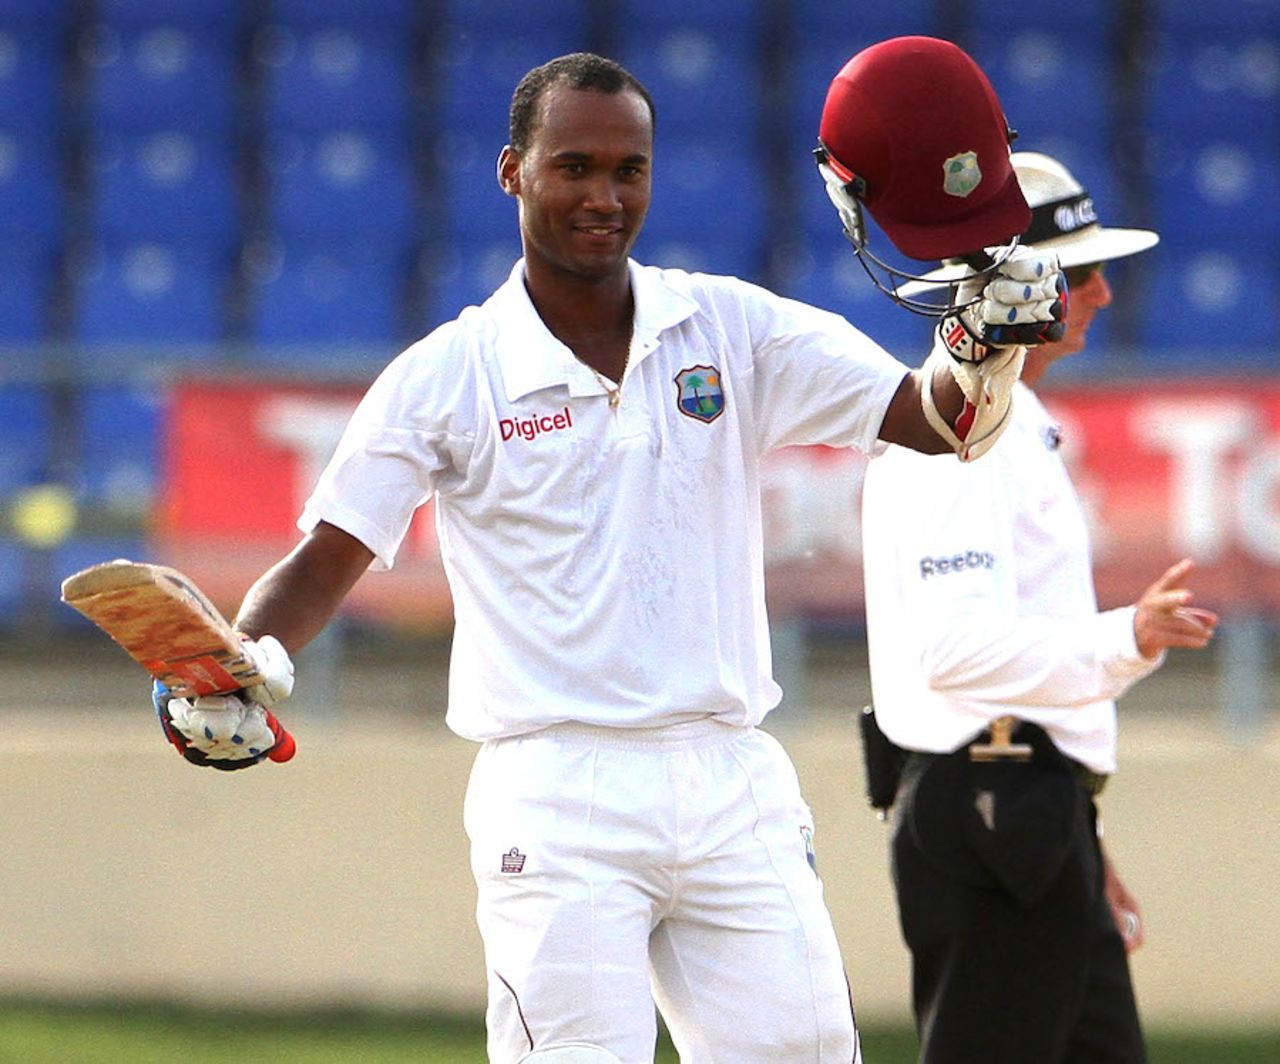 Kraigg Brathwaite raises his bat on reaching his first century, West Indies v New Zealand, 2nd Test, Trinidad, 2nd day, June 17, 2014